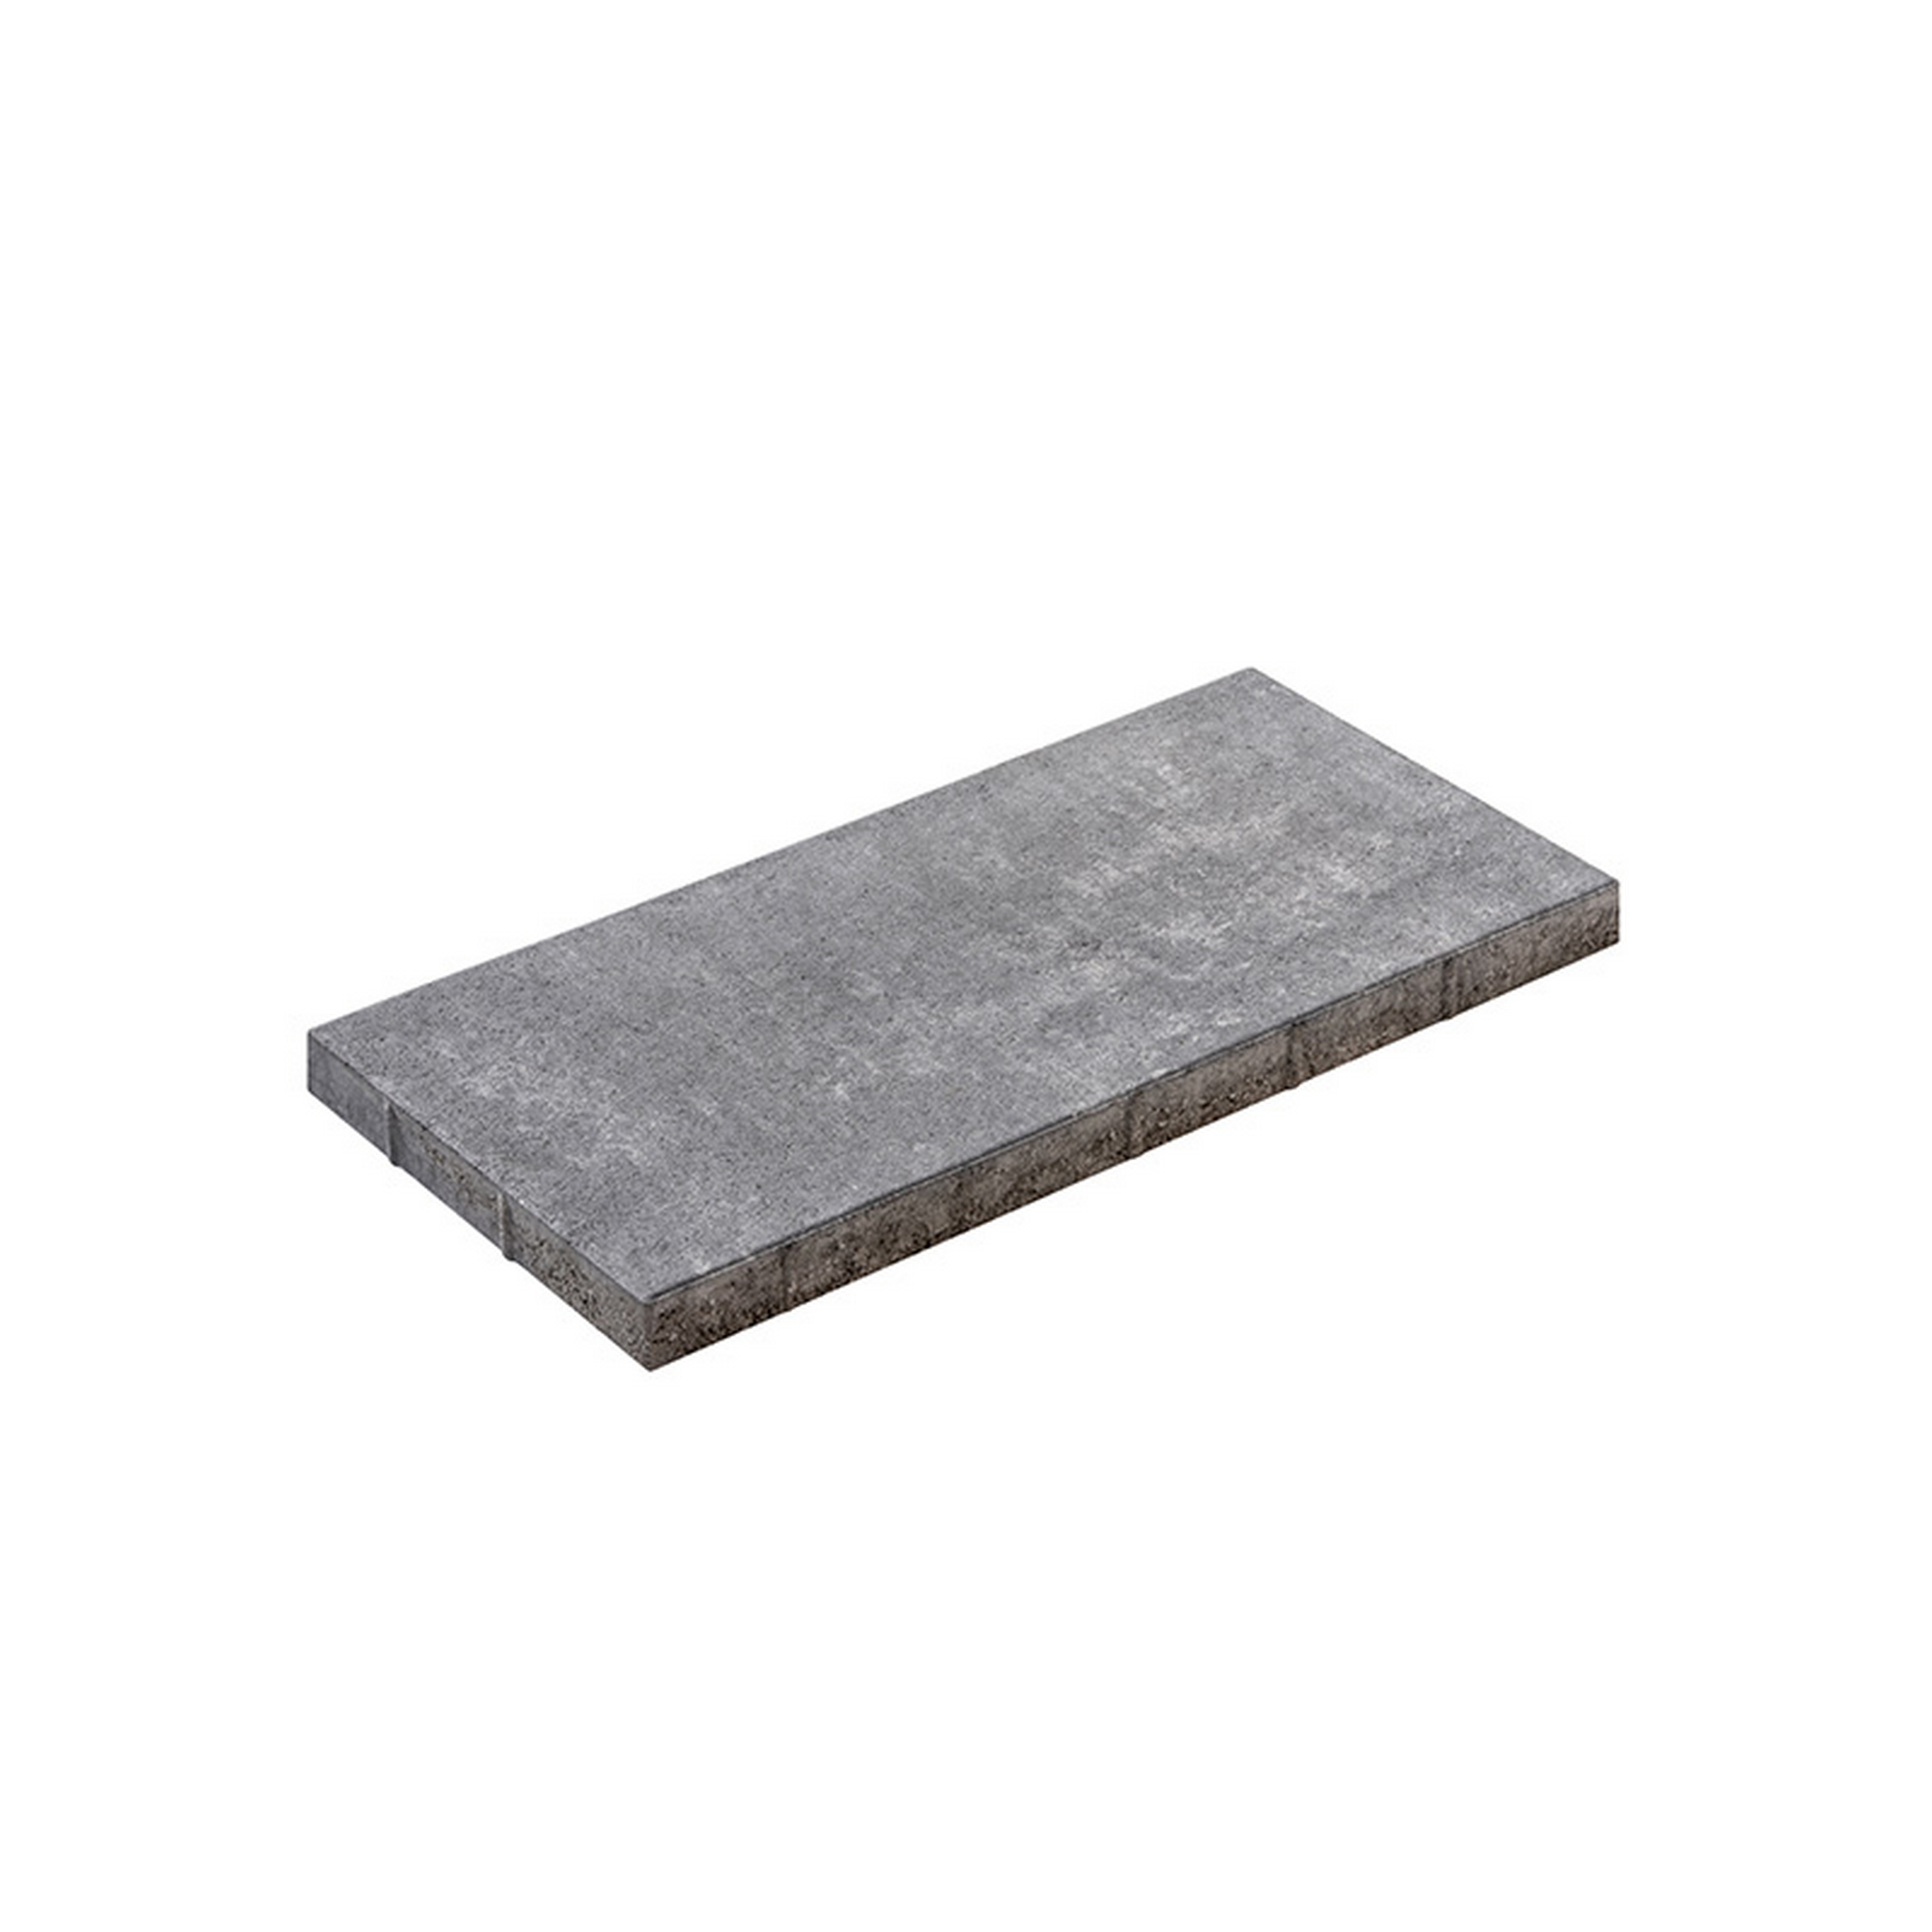 Terrassenplatte 'T-Court Grade' Beton schwarz/weiß 60 x 30 x 4 cm + product picture